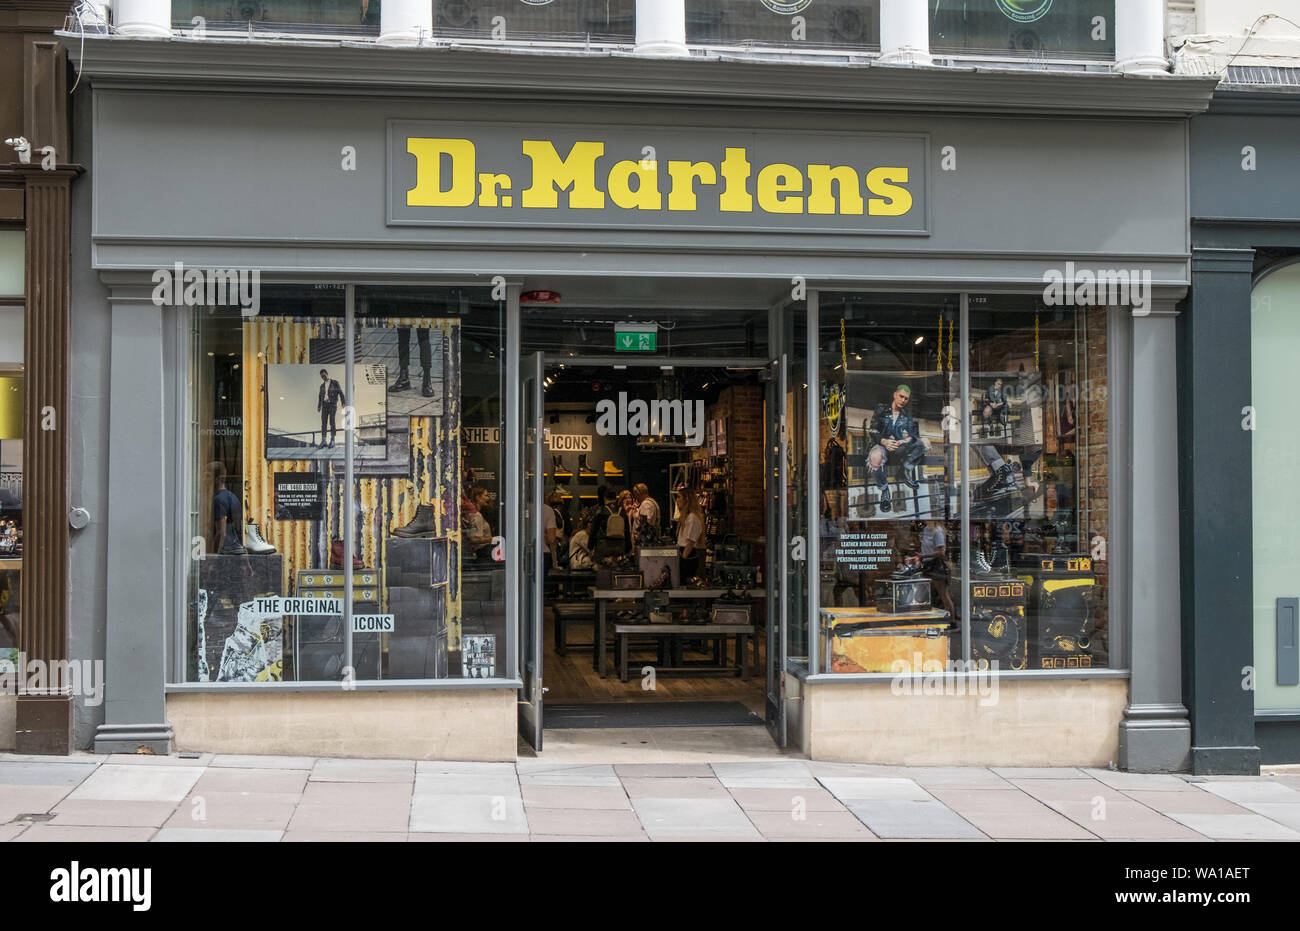 Dr Martens shoe Shop exterior, Bath, UK Stock Photo